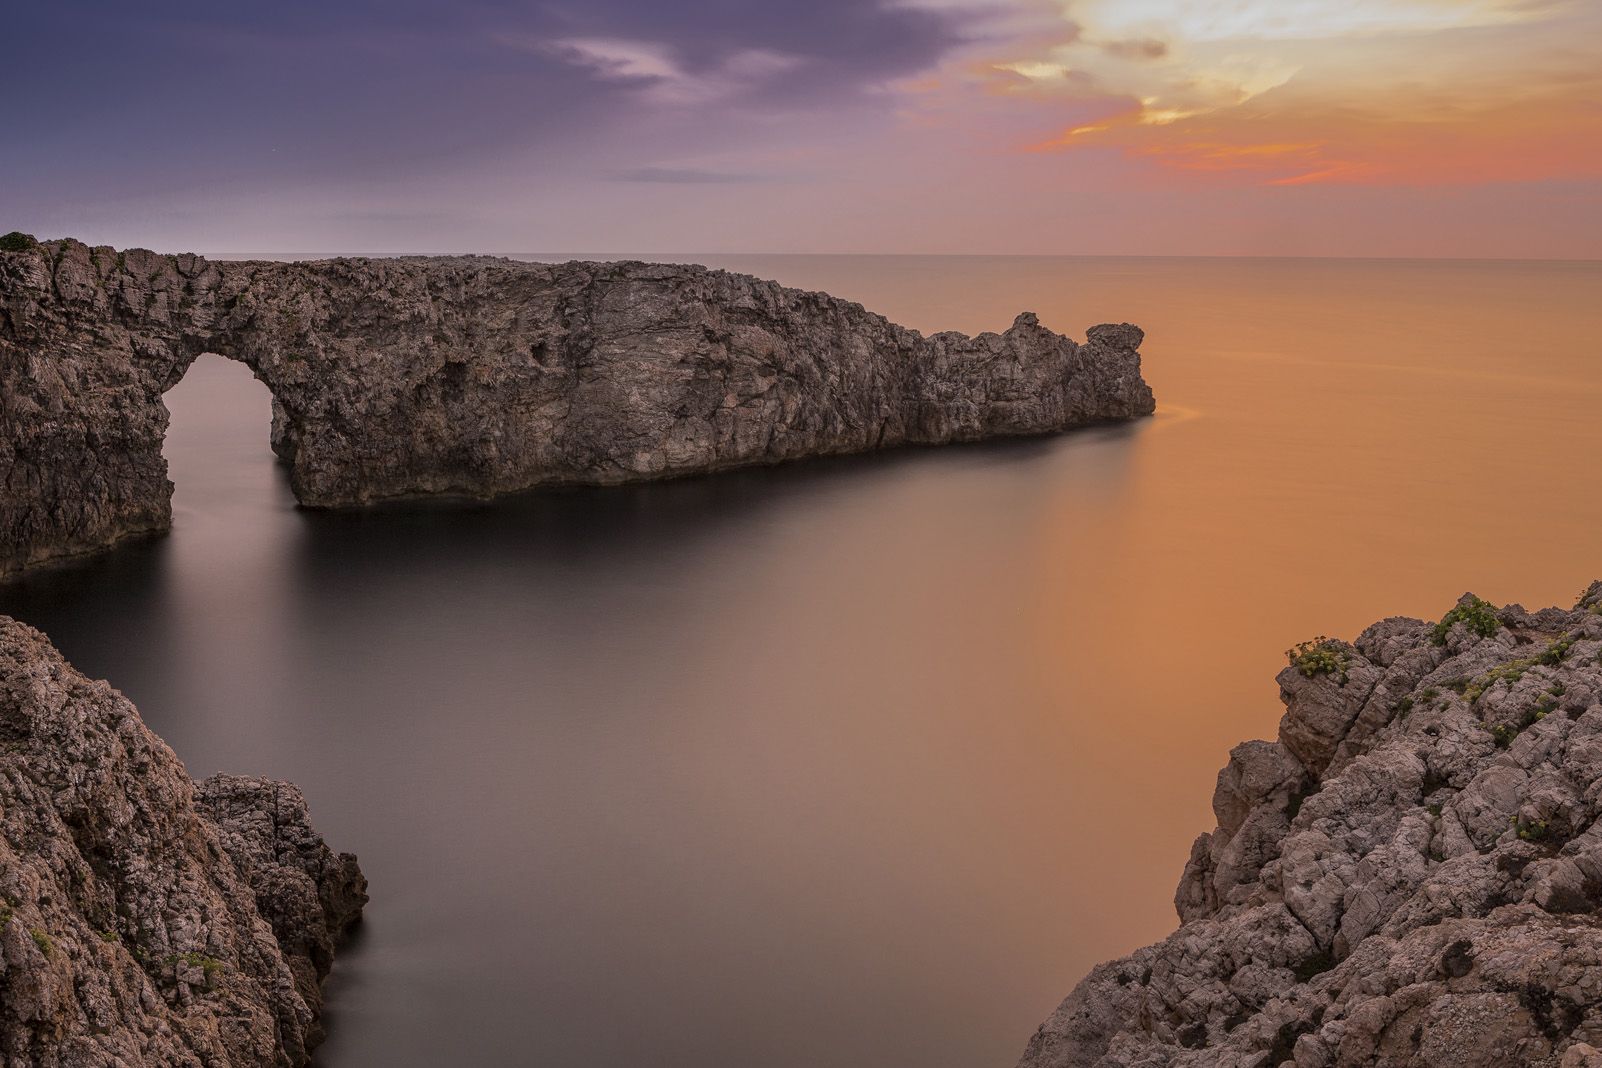 8è Premi categoria Viatjes. "Posta de sol a Pont d'en Gil, Menorca" de Victor Illera Massana